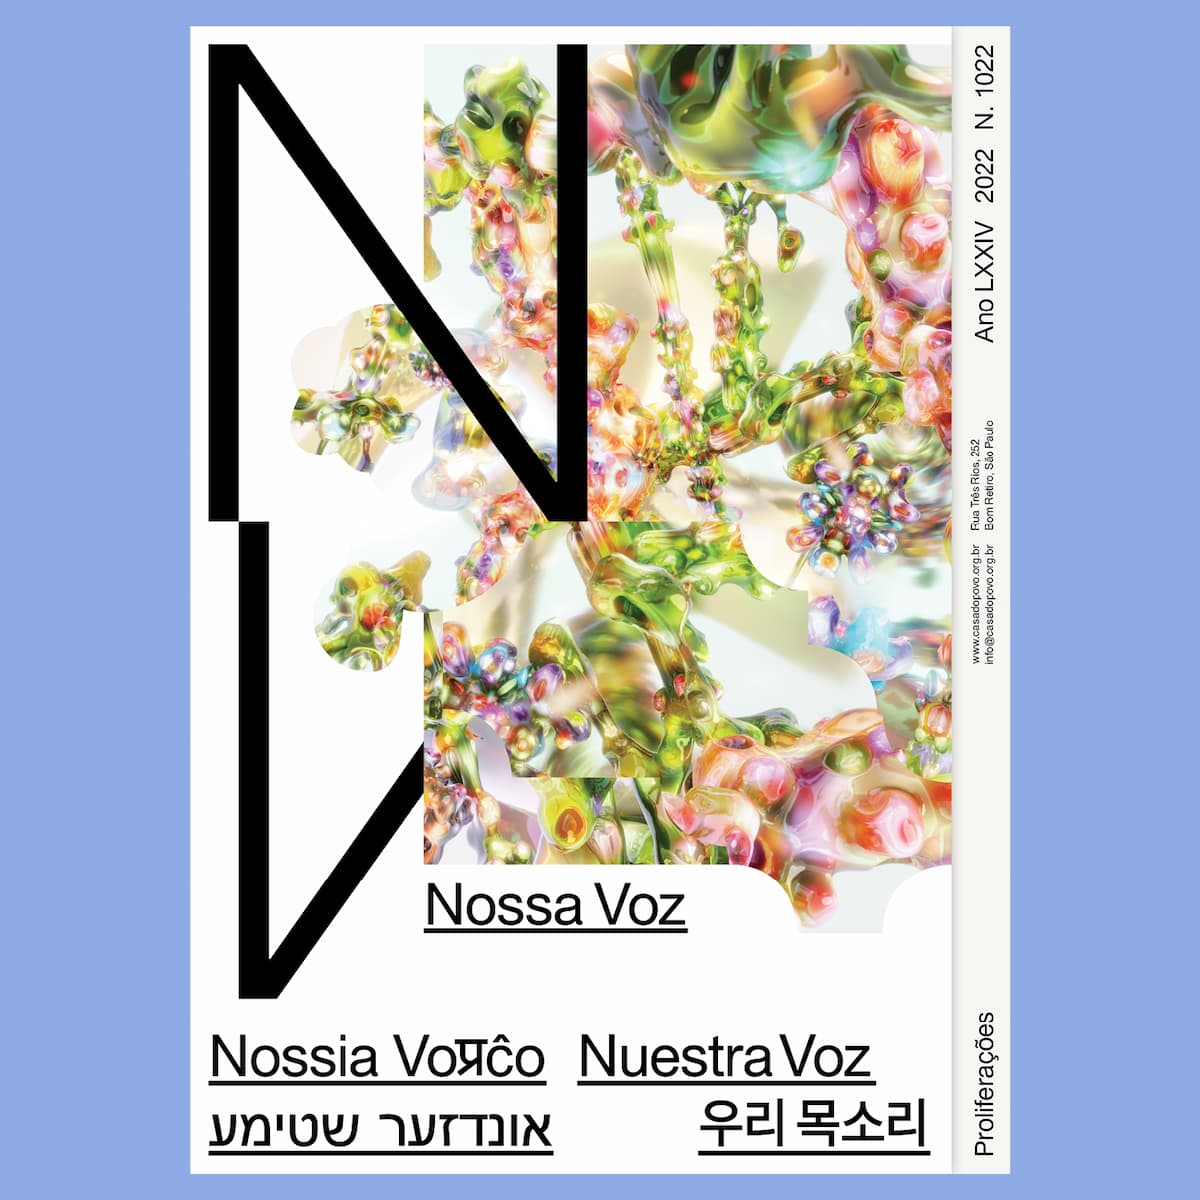 Casa do Povo launches annual edition of the publication Nossa Voz, cover 2022. Disclosure.